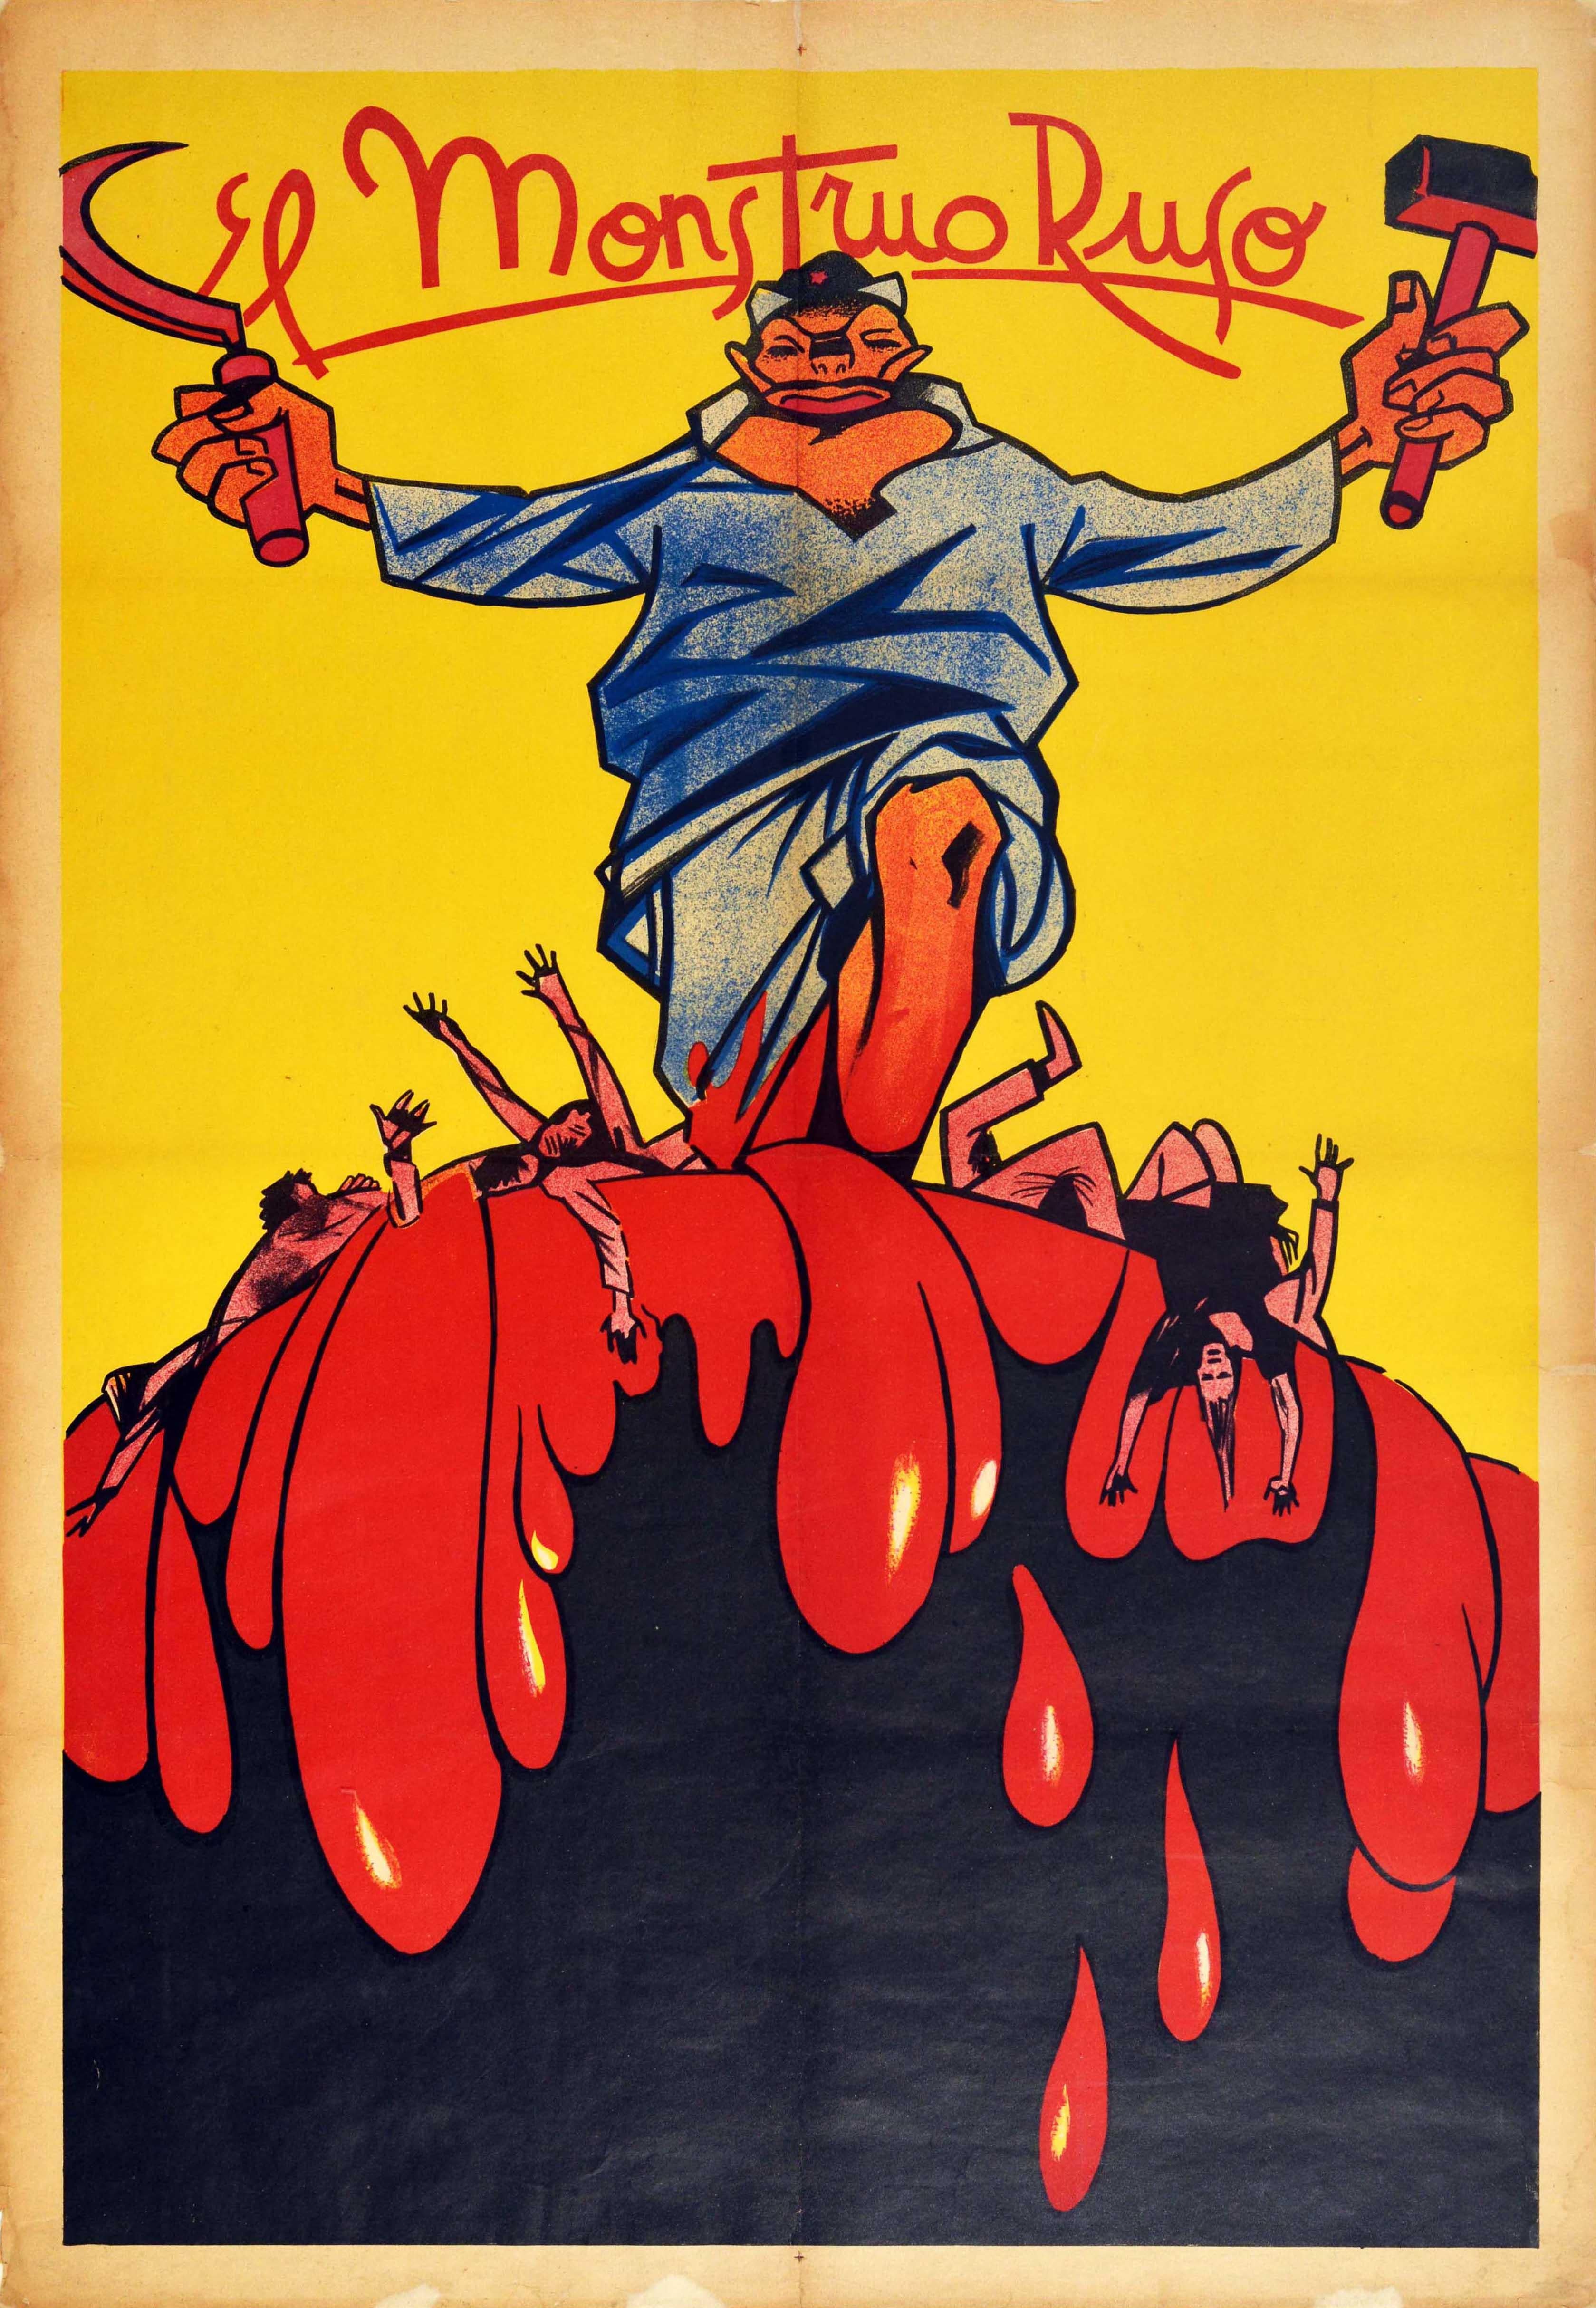 Unknown Print – Original Vintage-Poster, Spanisches Bürgerkriegsplakat, El Monstruo Ruso, Das russische Monster